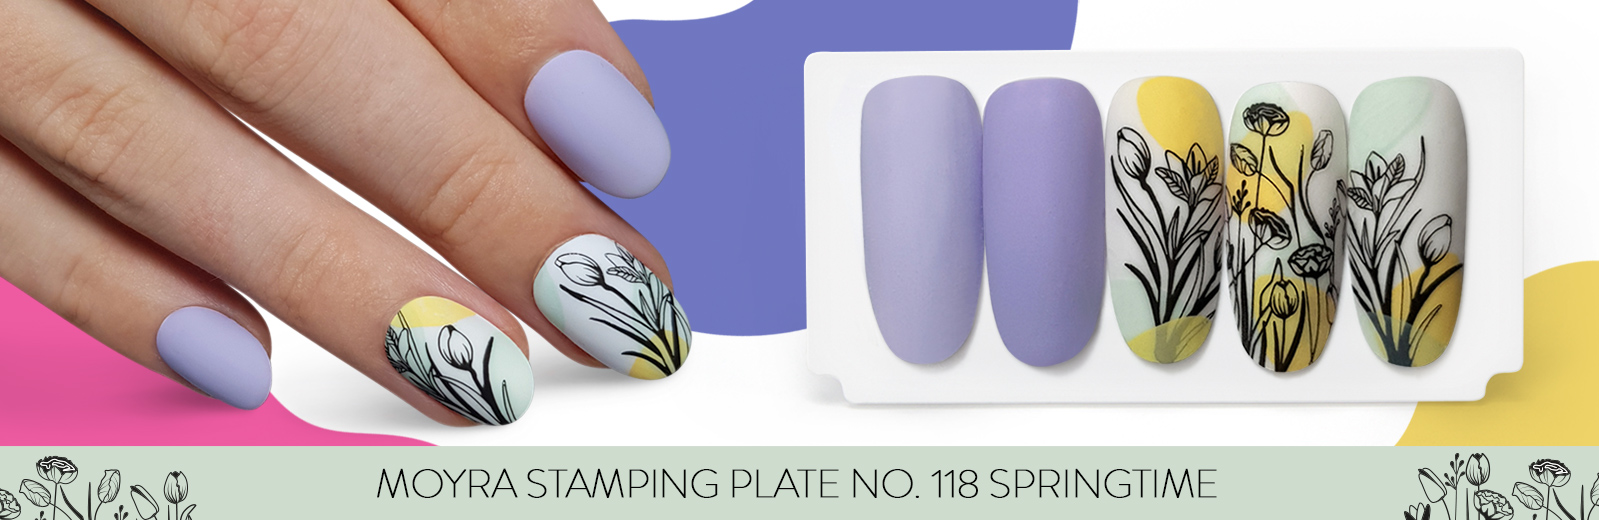 Moyra stamping plate 118 Springtime